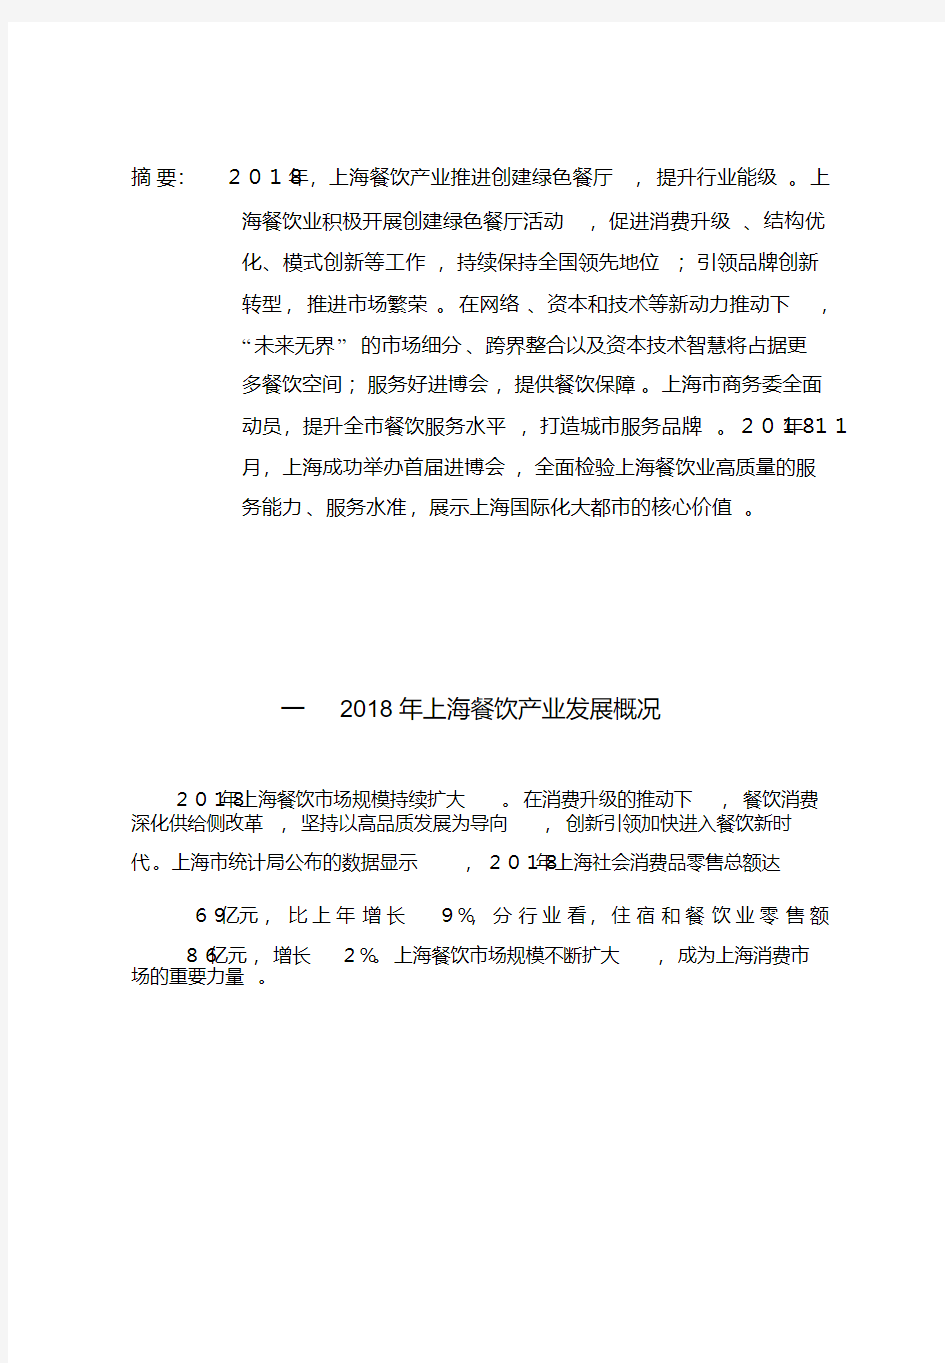 2019年上海餐饮产业分析报告